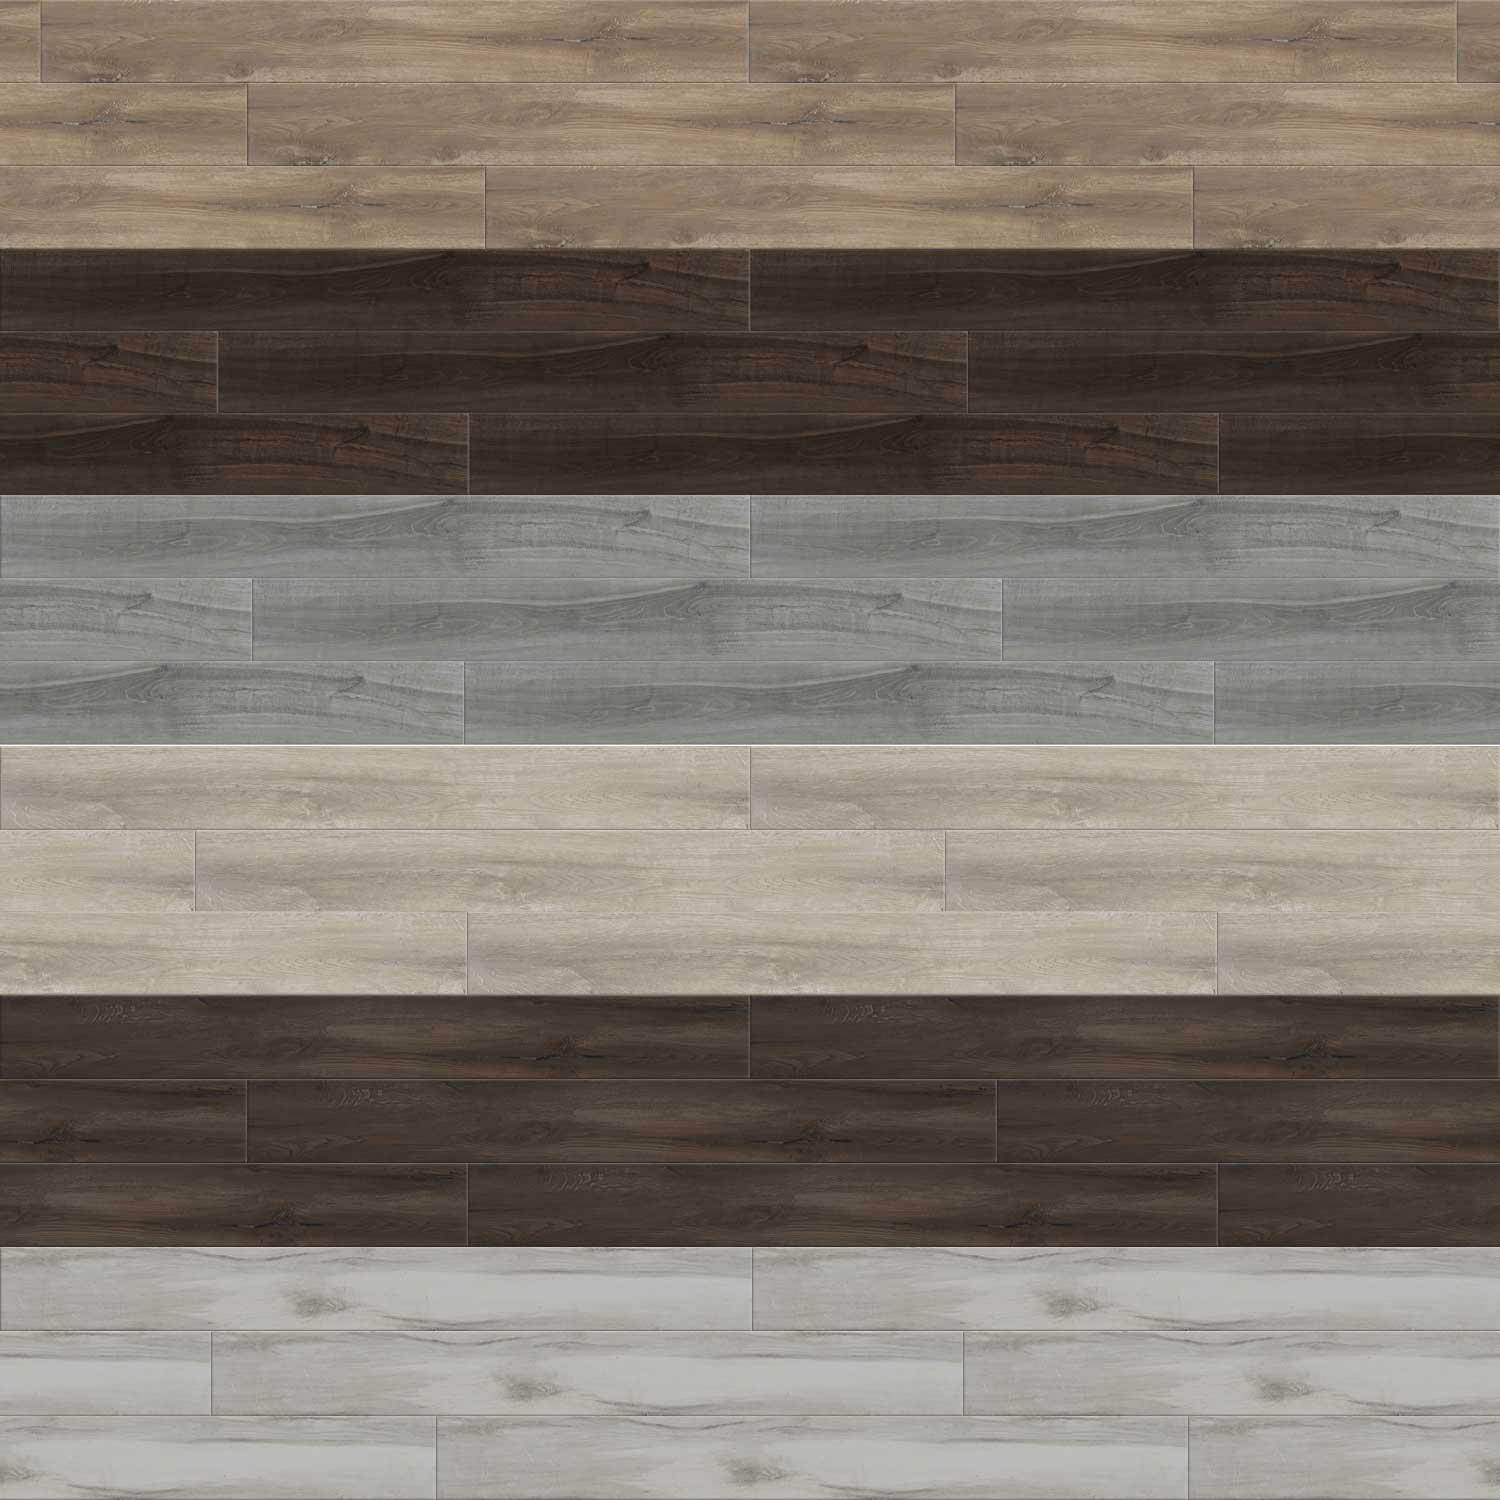 Timber Porcelain Tile Wood Effect Walls Floor Large 200x1200mm